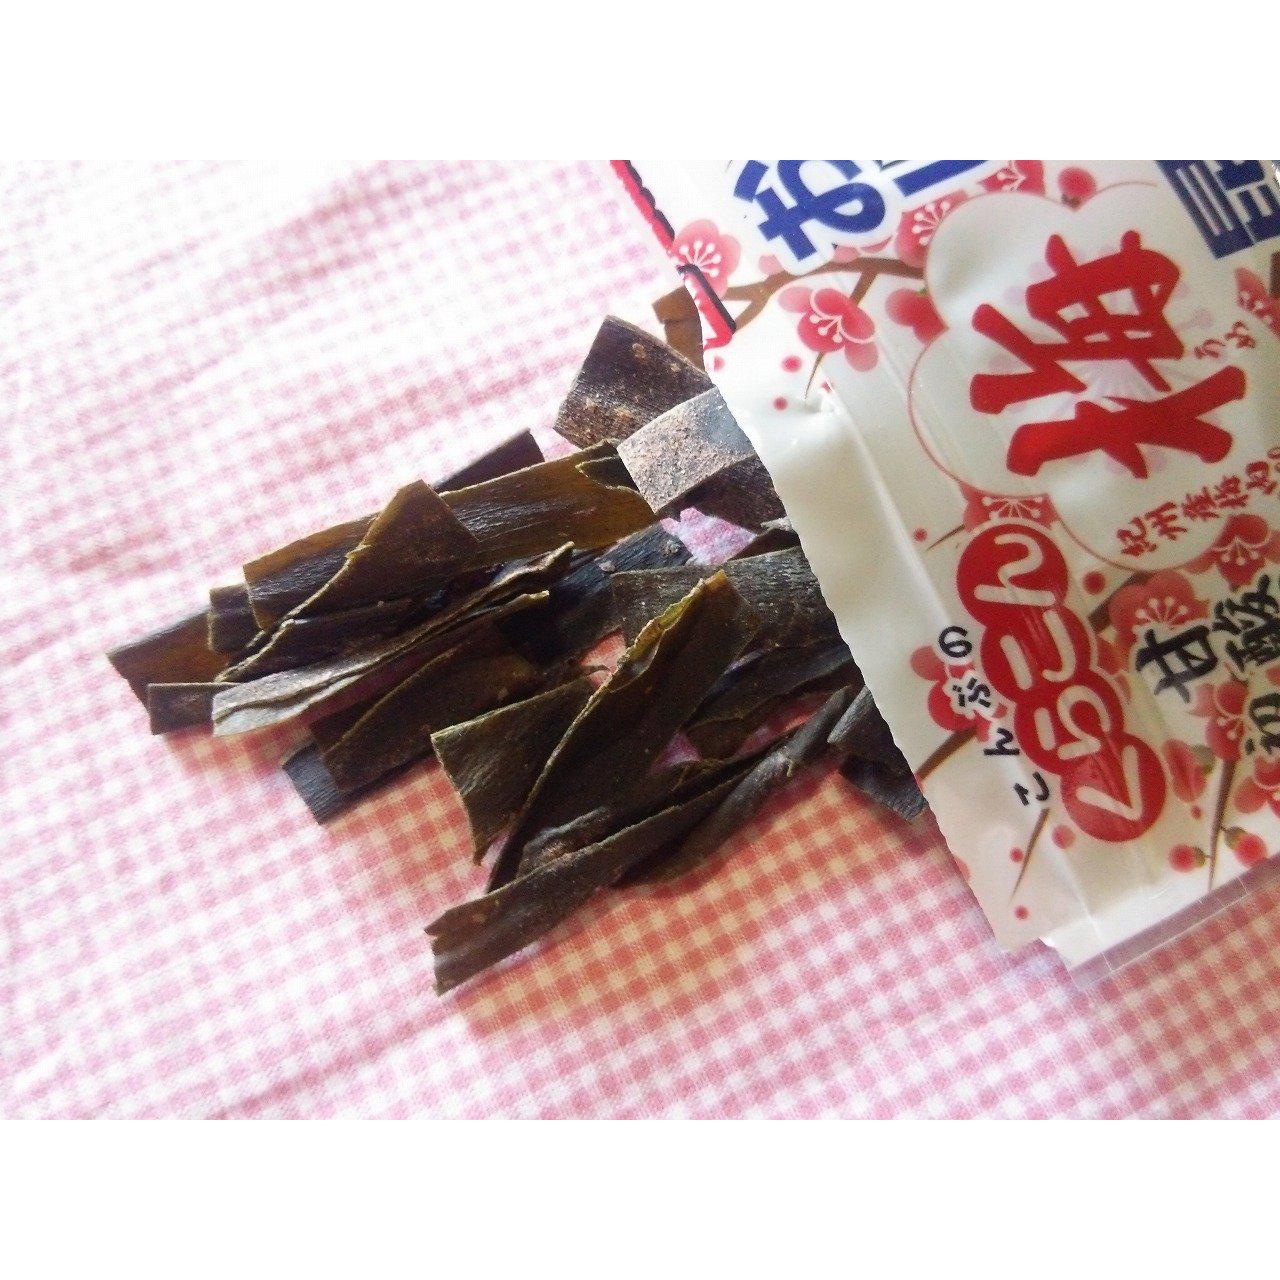 Kurakon Oshaburi Kombu Ume Chewy Kombu Snack Plum Flavor (Pack of 6)